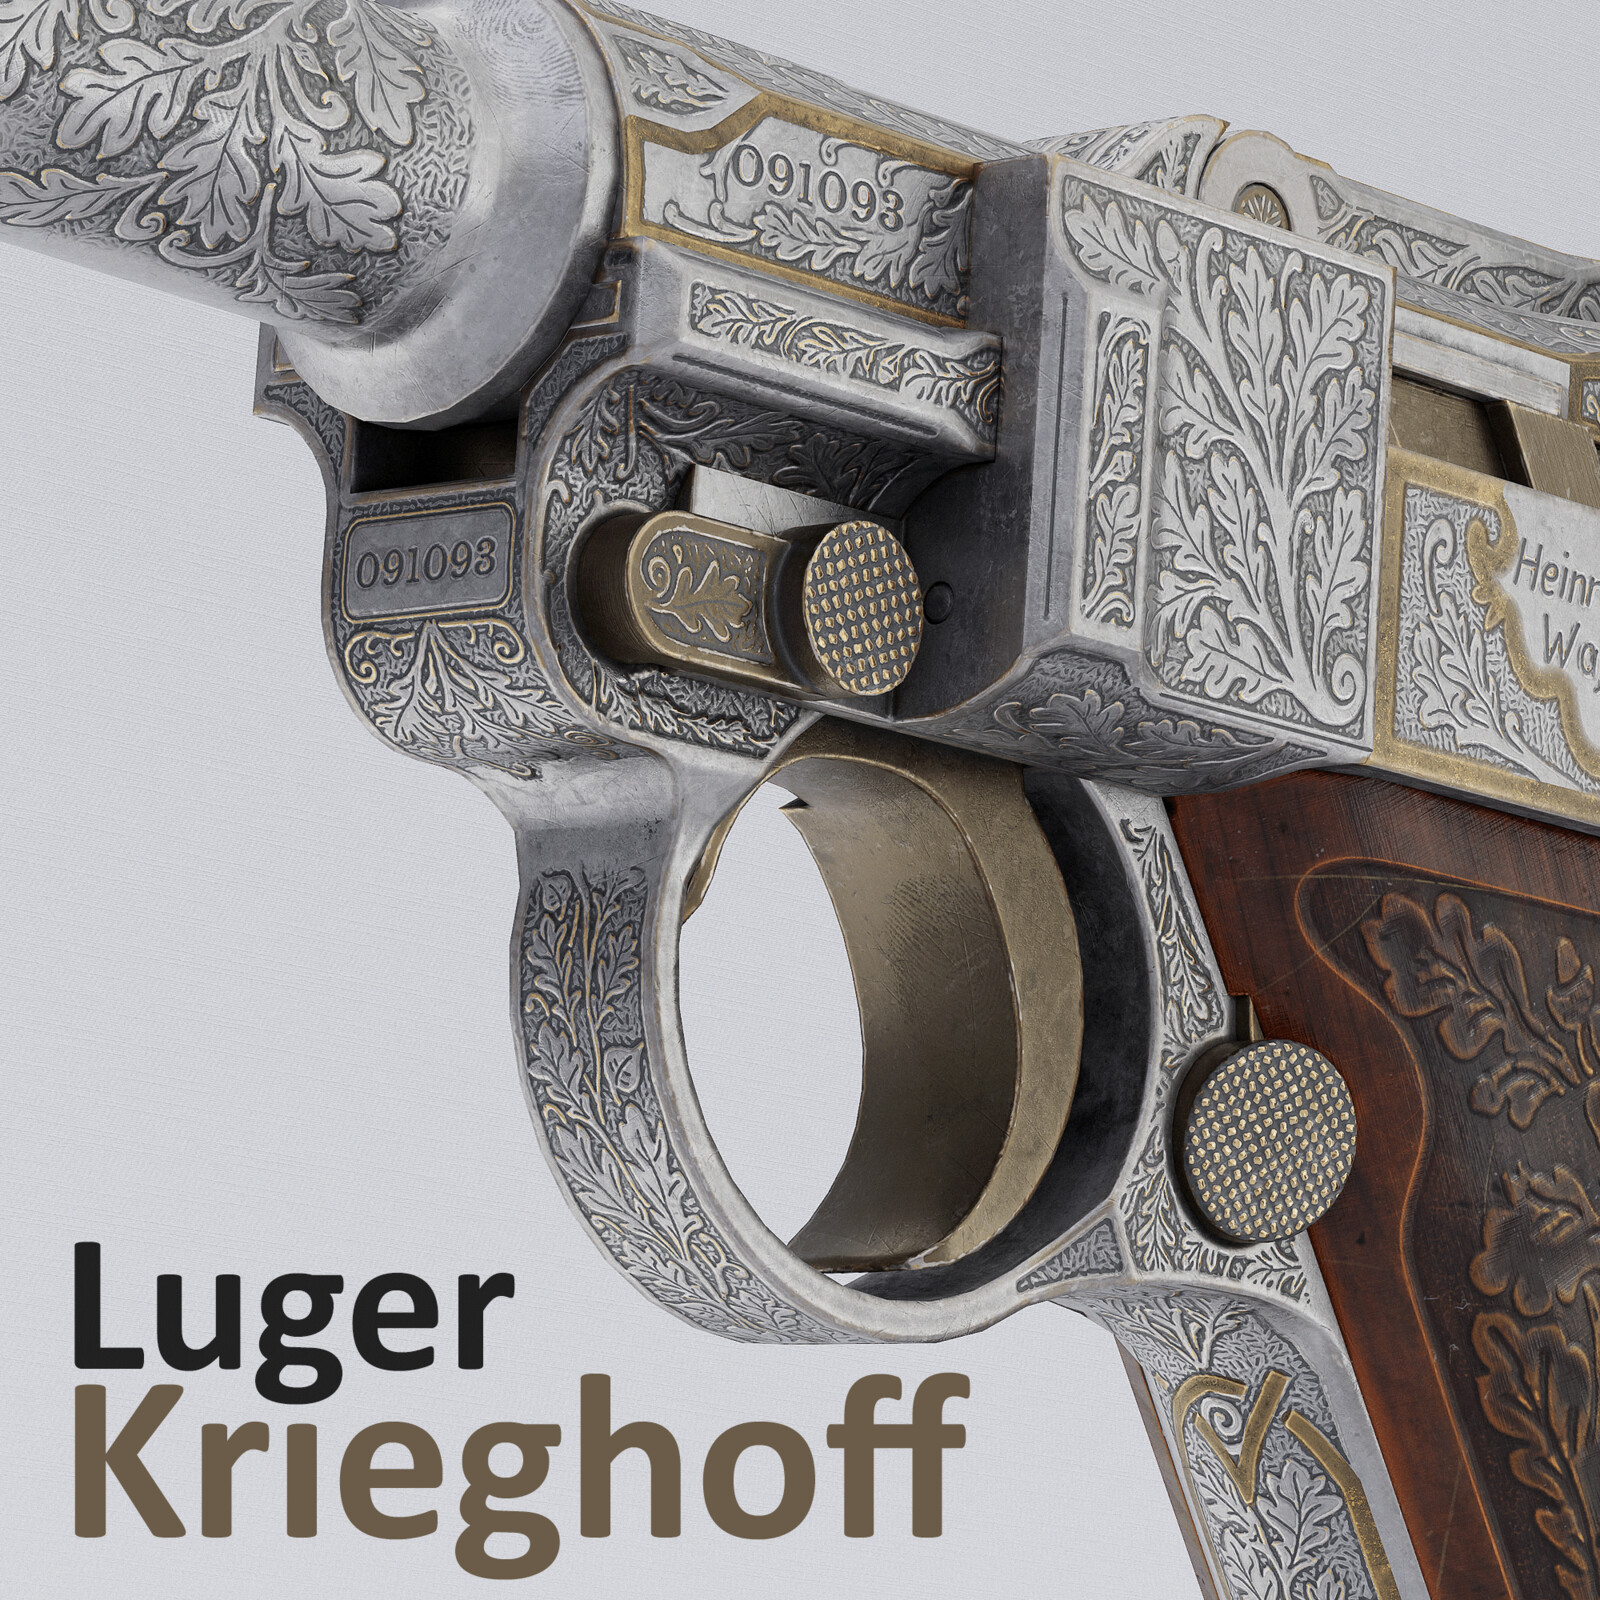 Krieghoff Luger